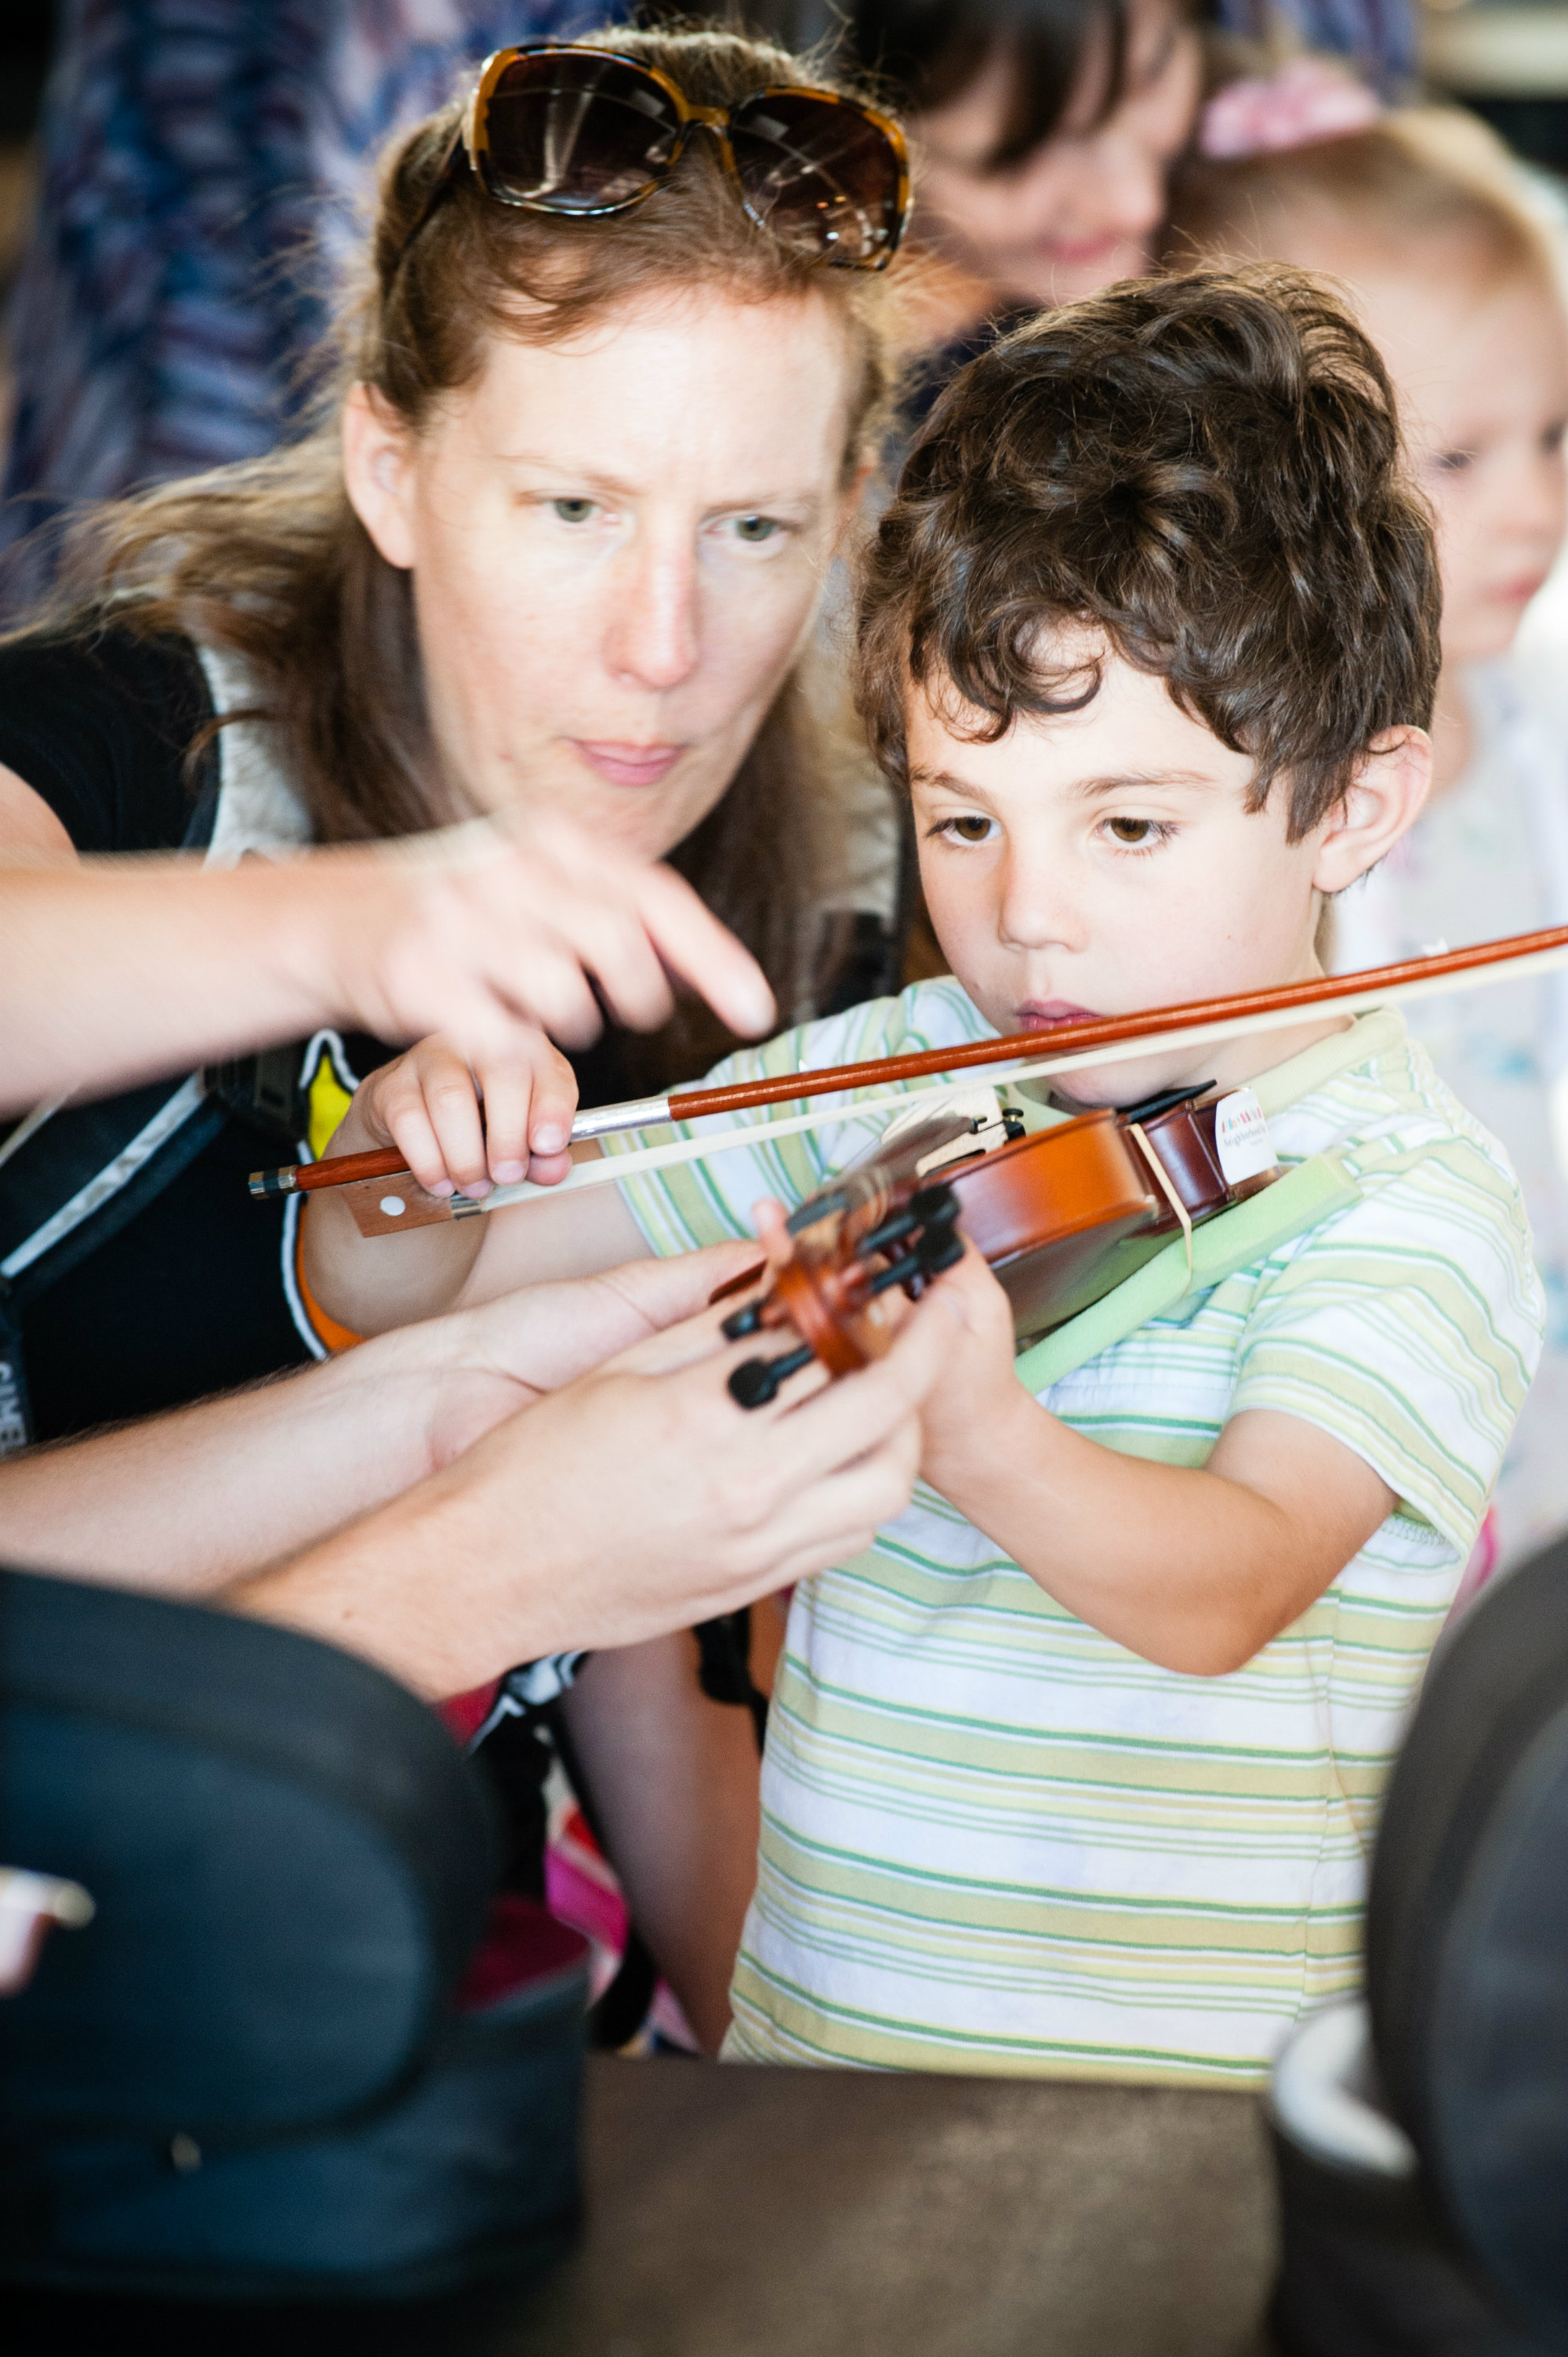 Photo: Inside the Orchestra Violin Lesson